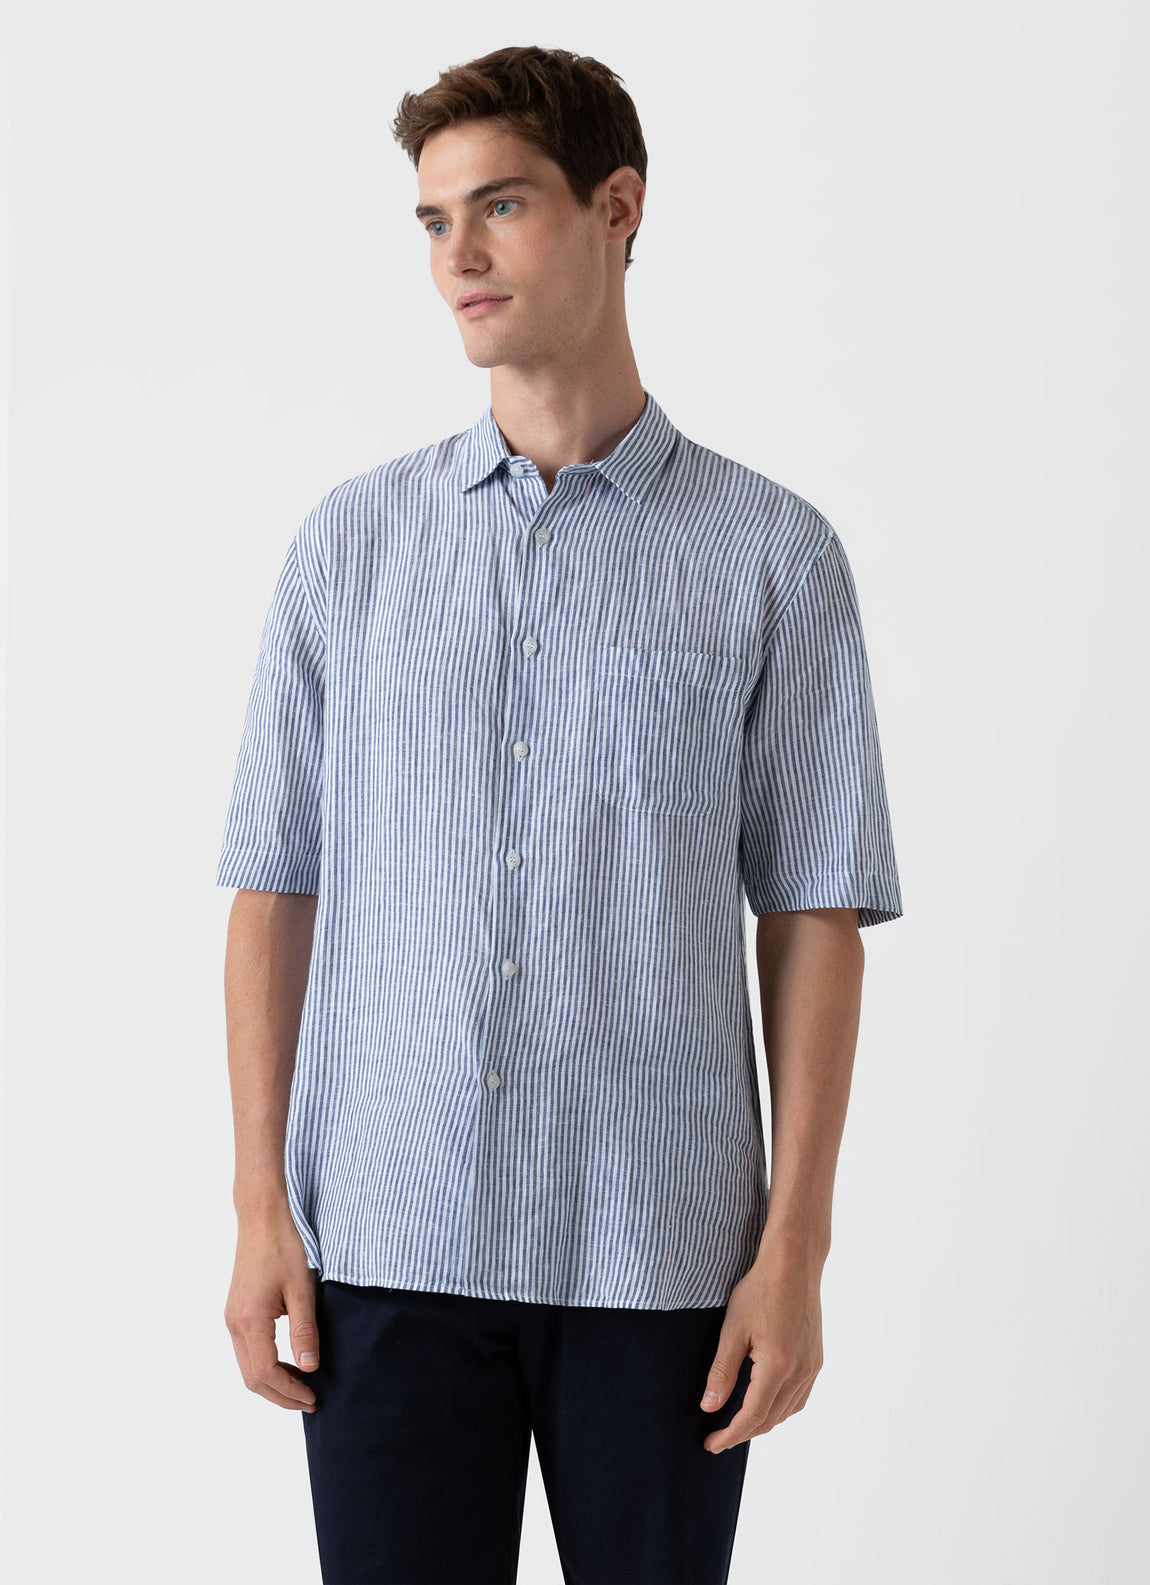 Men's Short Sleeve Linen Shirt in Navy/White Stripe | Sunspel